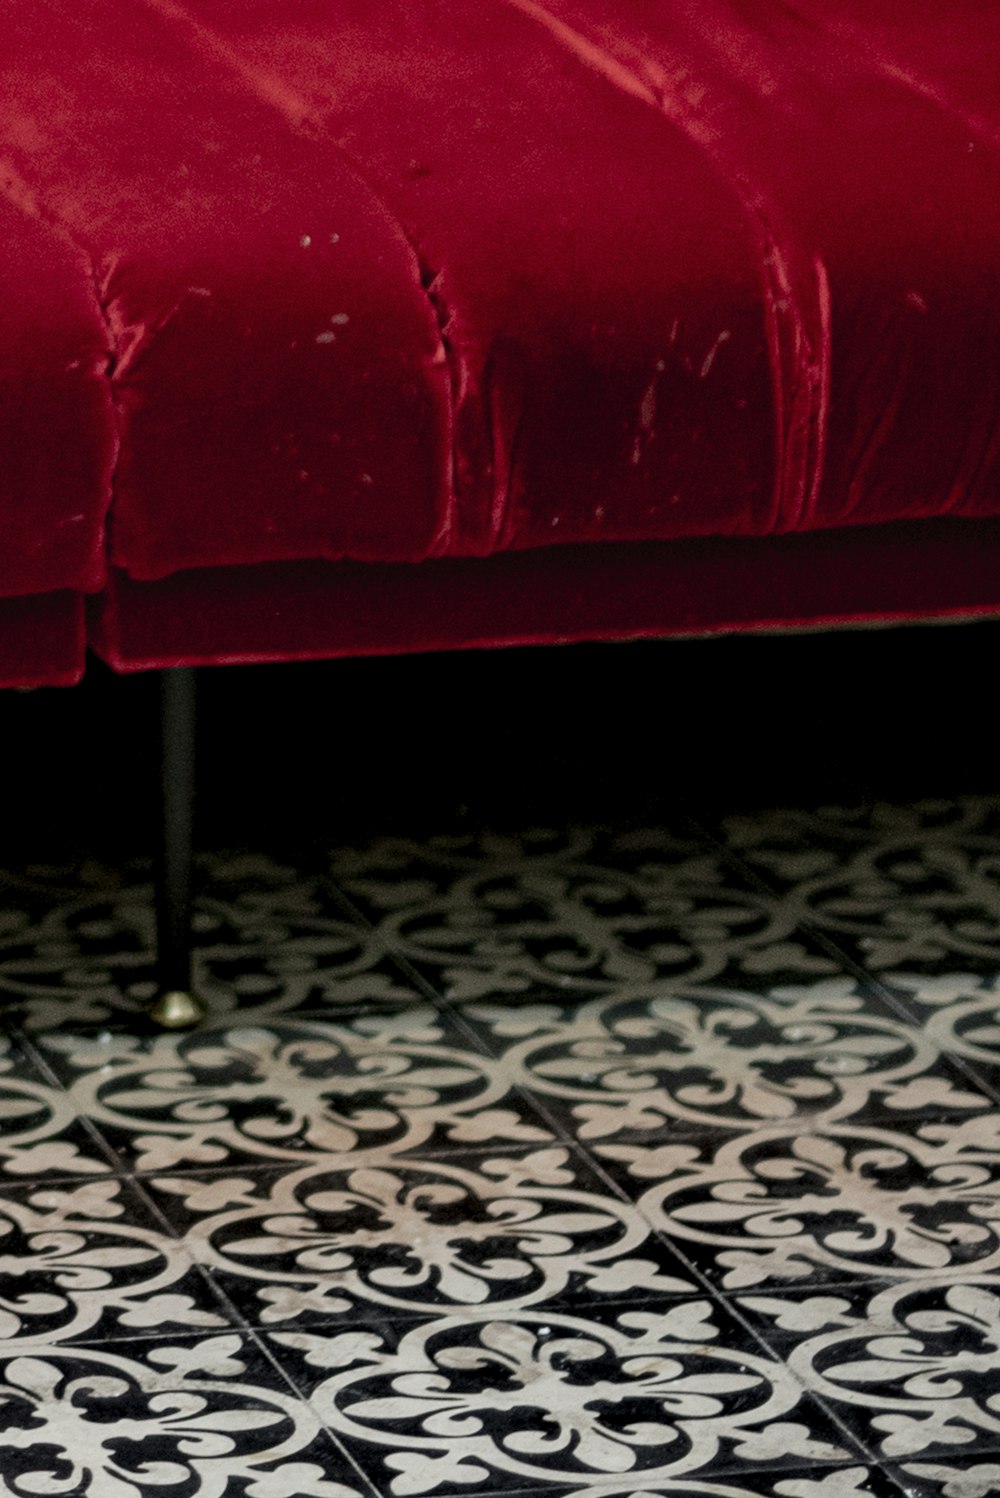 sofá de couro vermelho no chão preto e branco